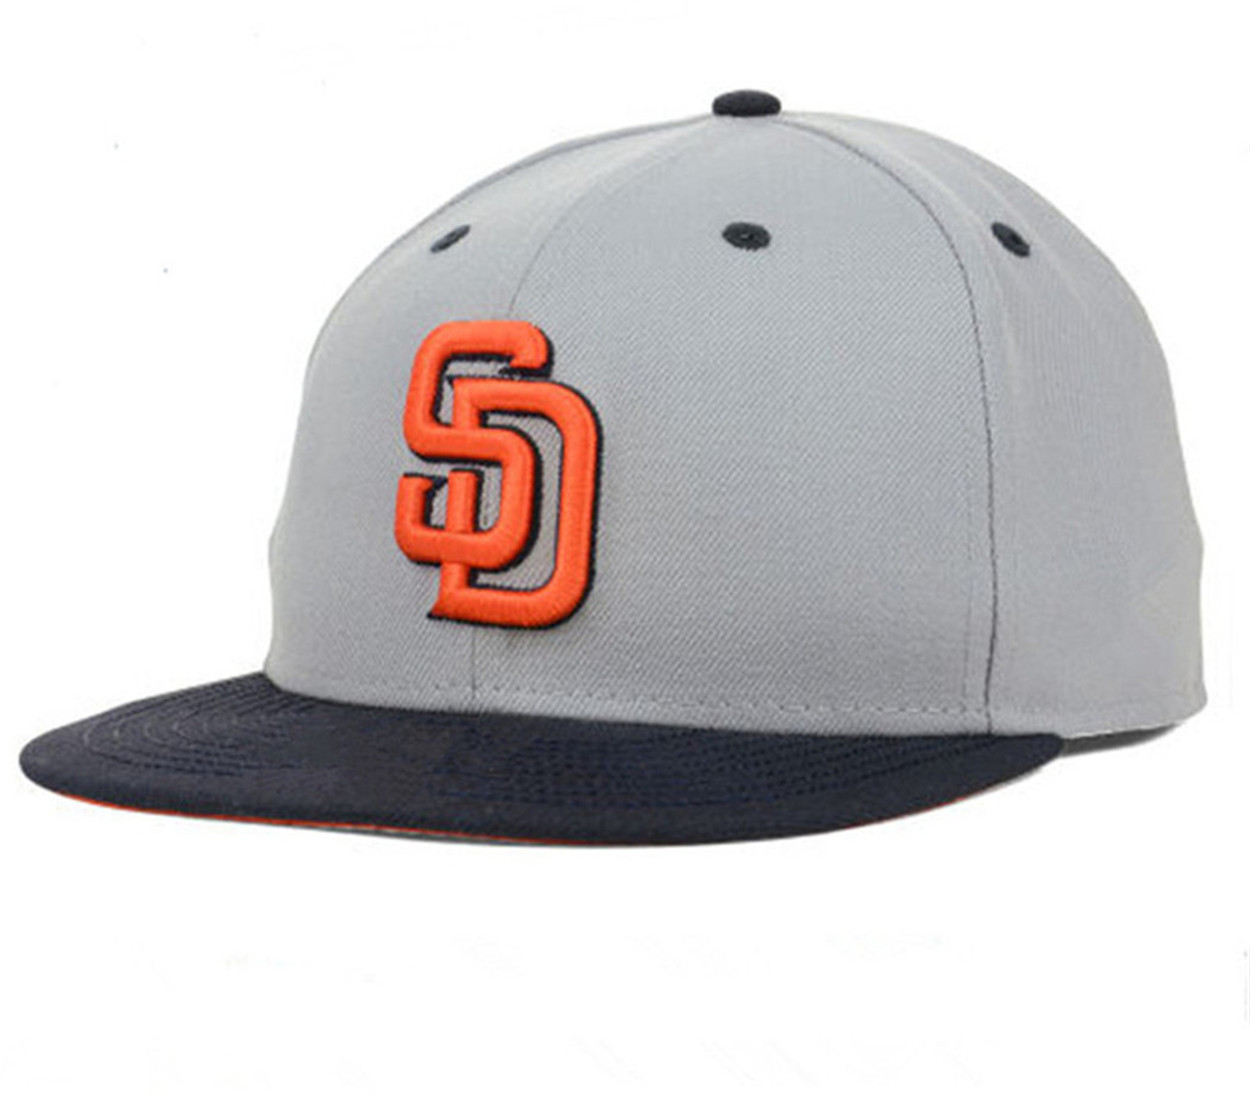 New San Diego Baseball Team Snapback Full fechado Caps Summer como sd letra gorras bones homens homens homens casuais esportes planos chapéus chapé capa A-8